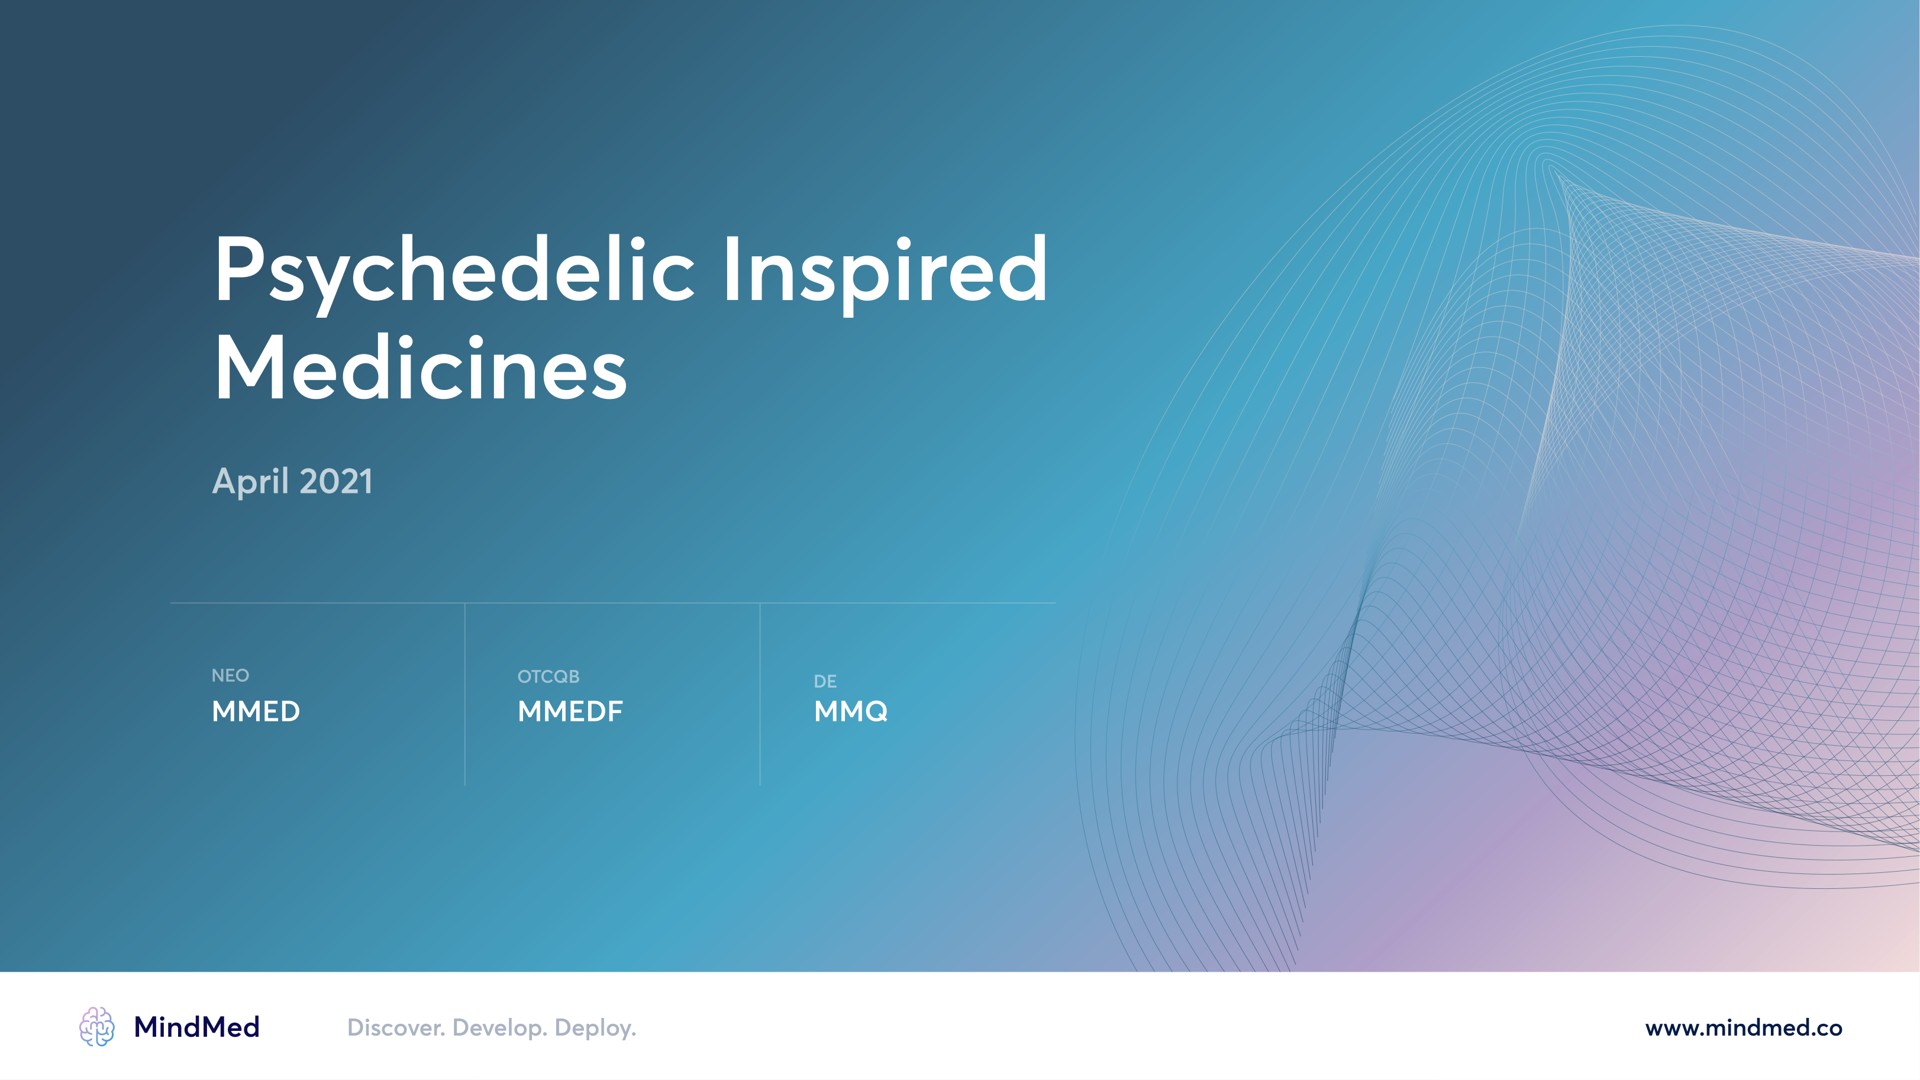 inspired medicines | MindMed